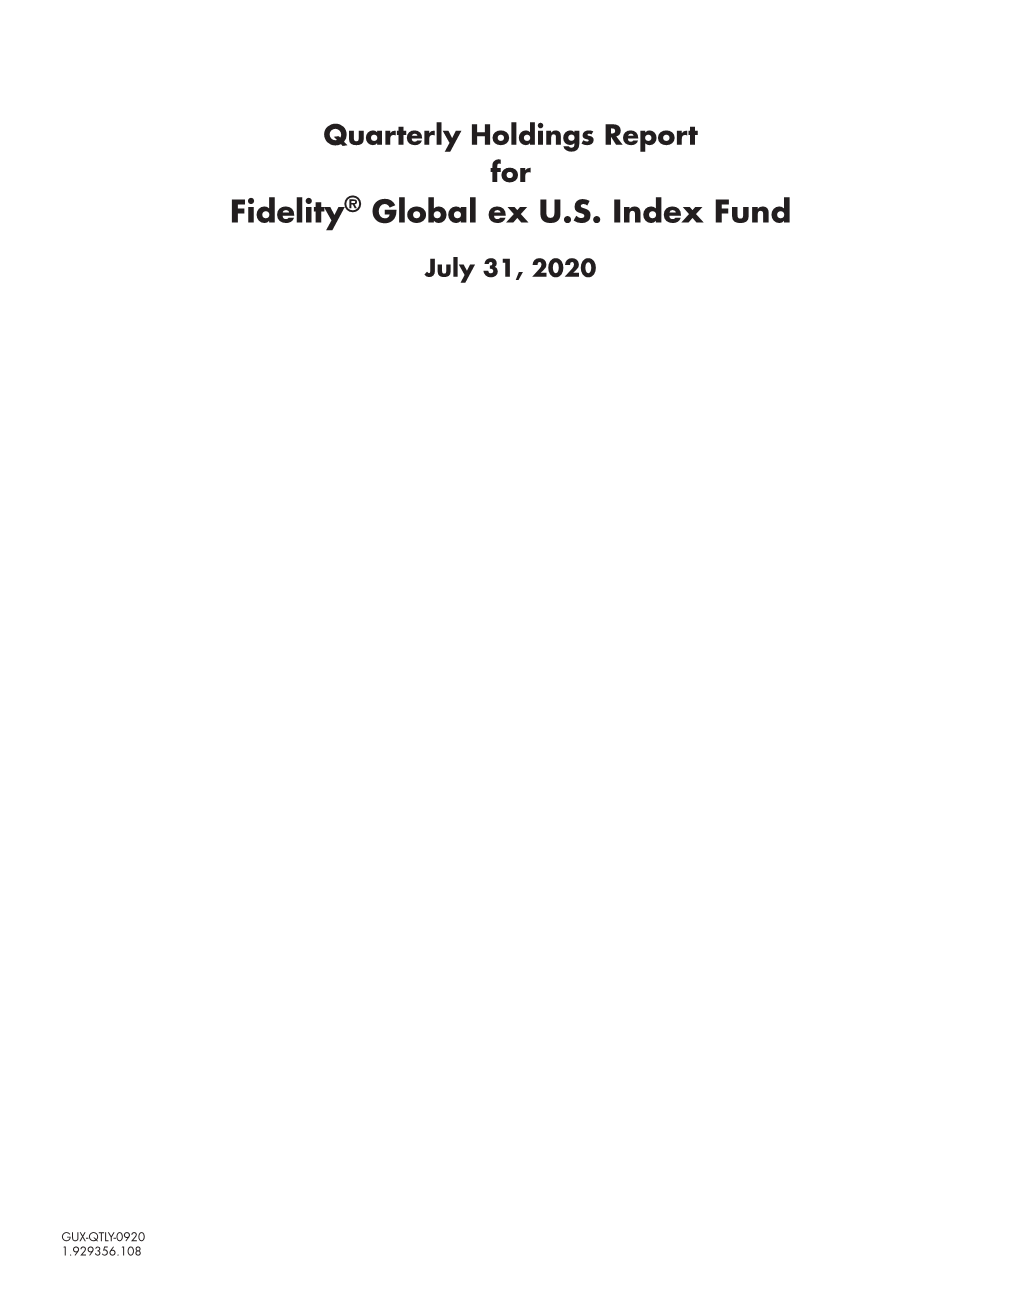 Fidelity® Global Ex U.S. Index Fund